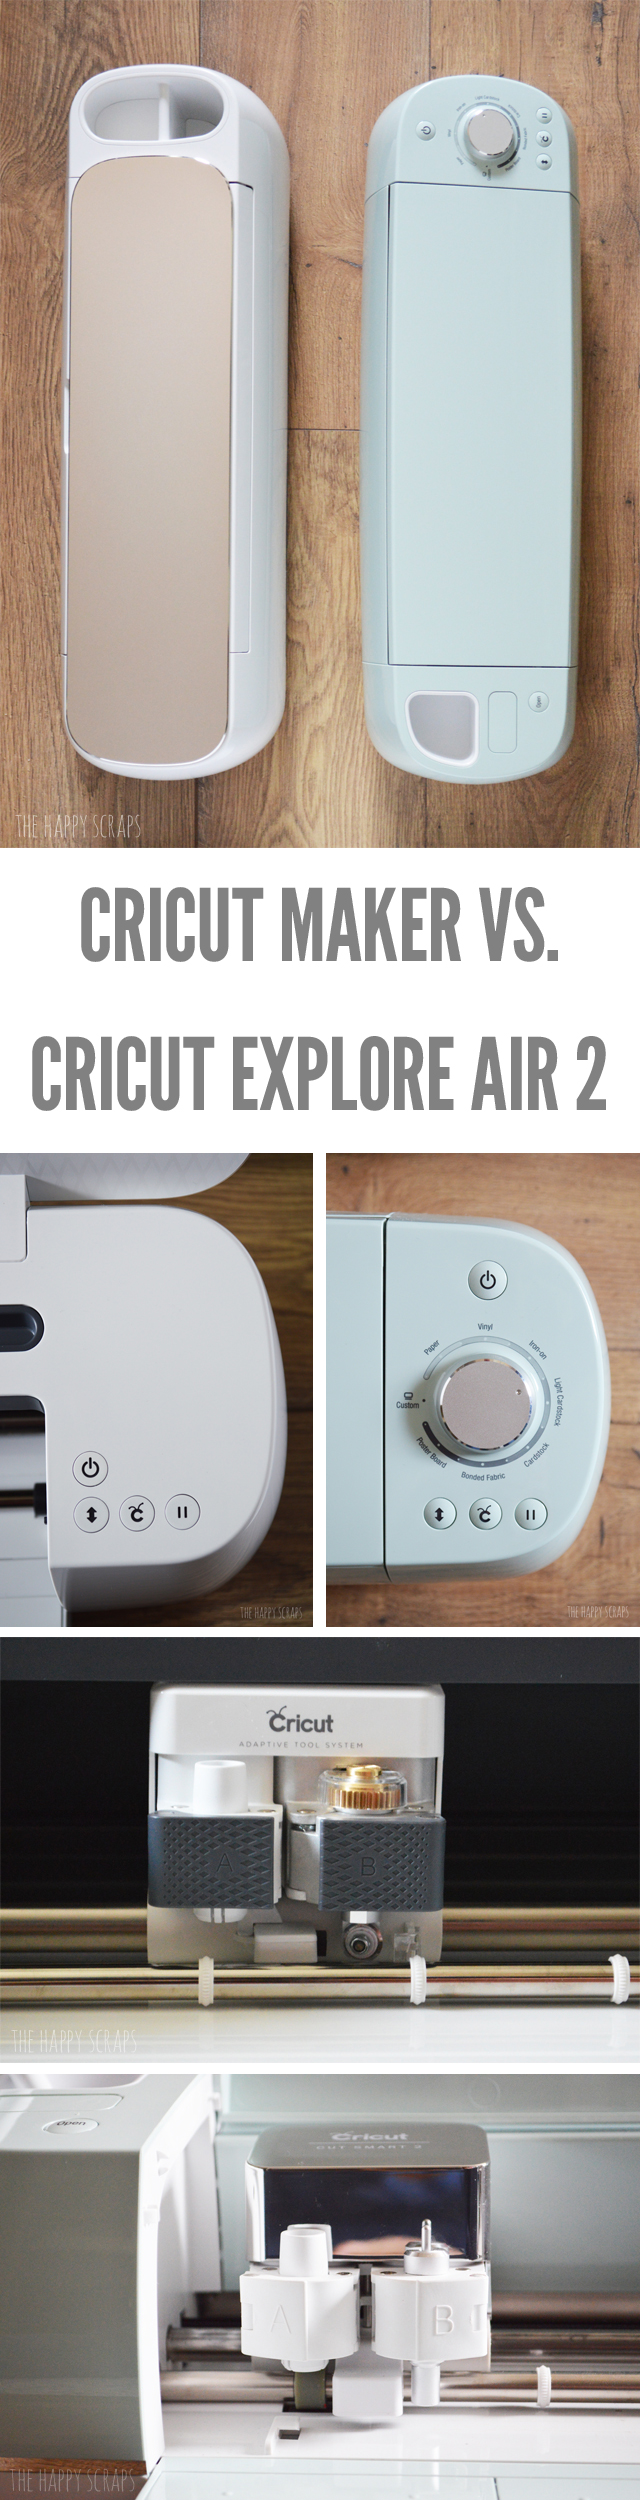 Cricut Maker Vs Cricut Explore Air 2 The Happy Scraps